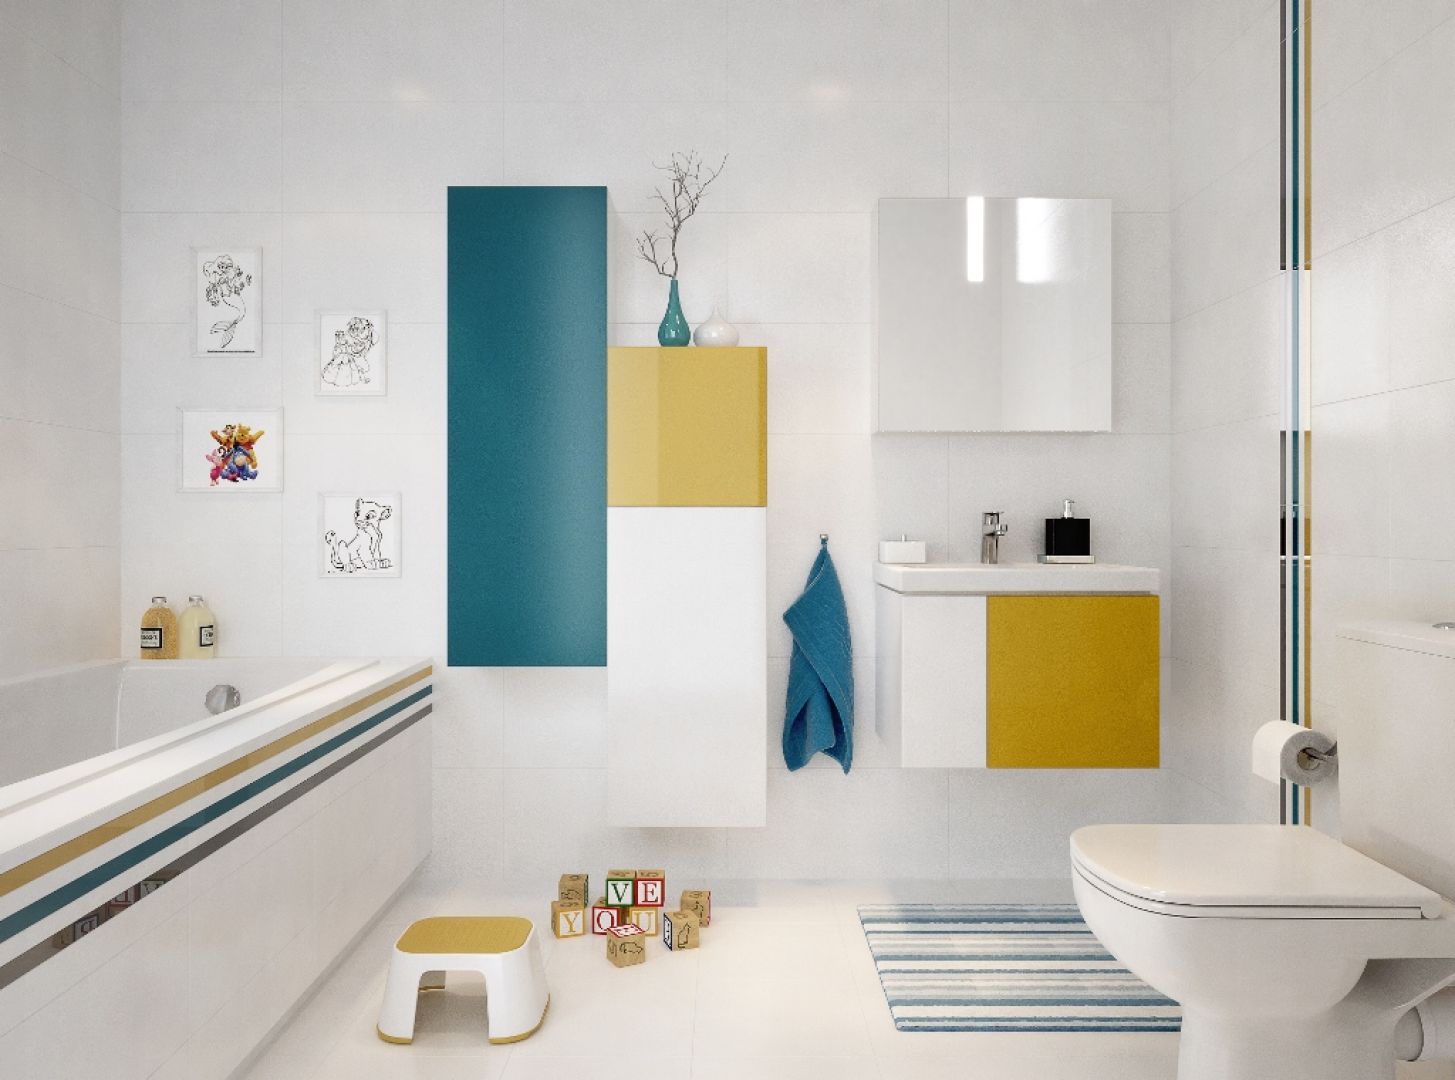 Biała łazienka przełamana kolorowymi elementami prezentuje się wizualnie ciepło. Fot. Cersanit 